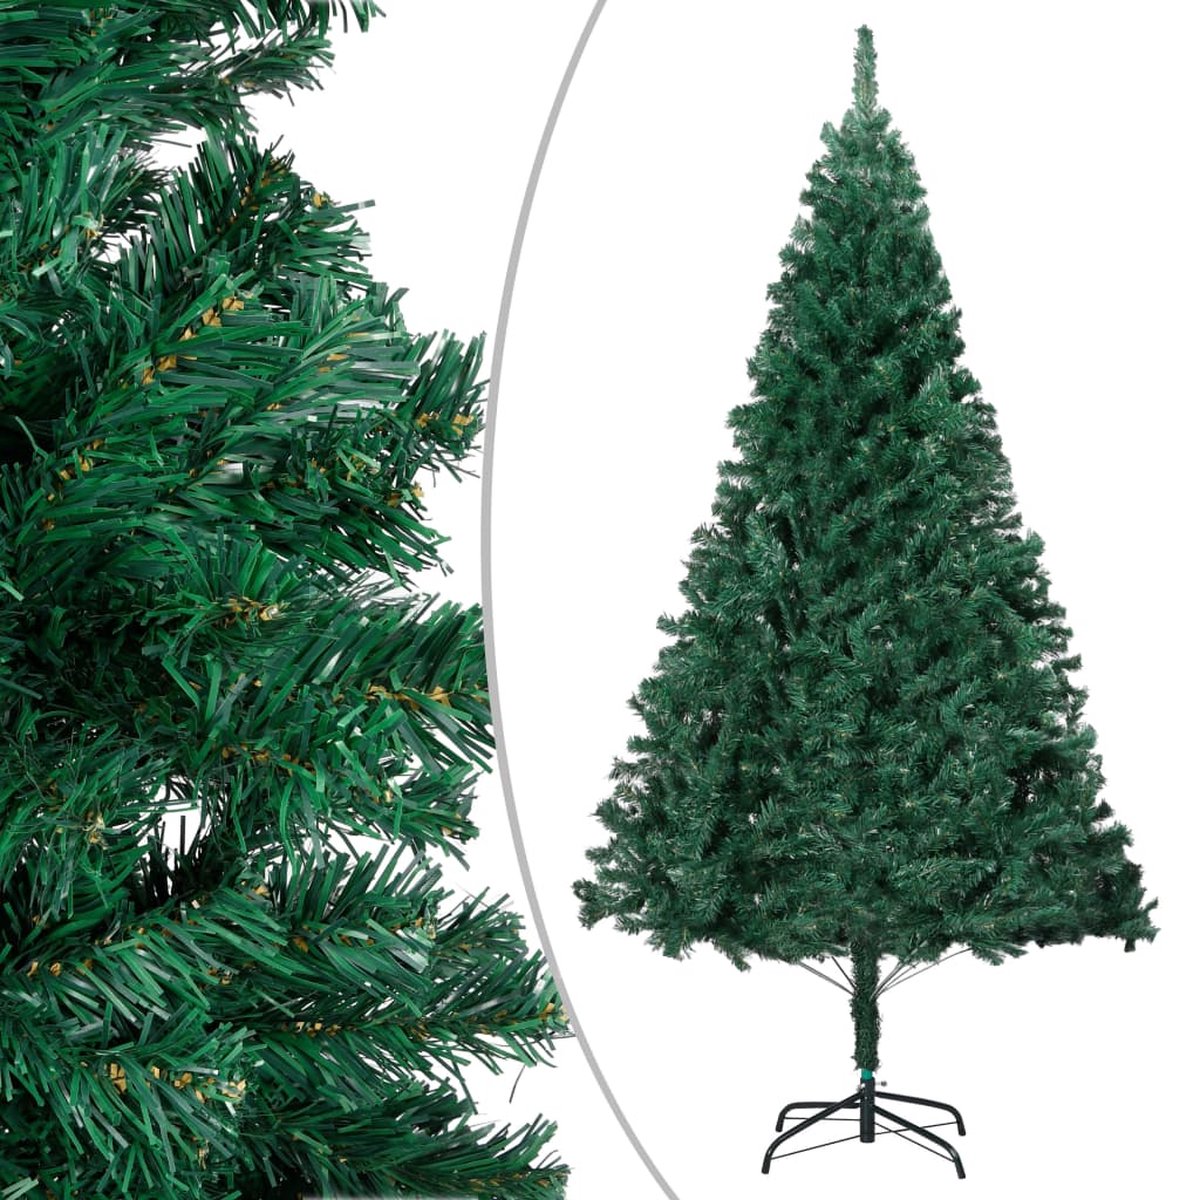 VidaLife Kunstkerstboom met dikke takken 150 cm PVC groen